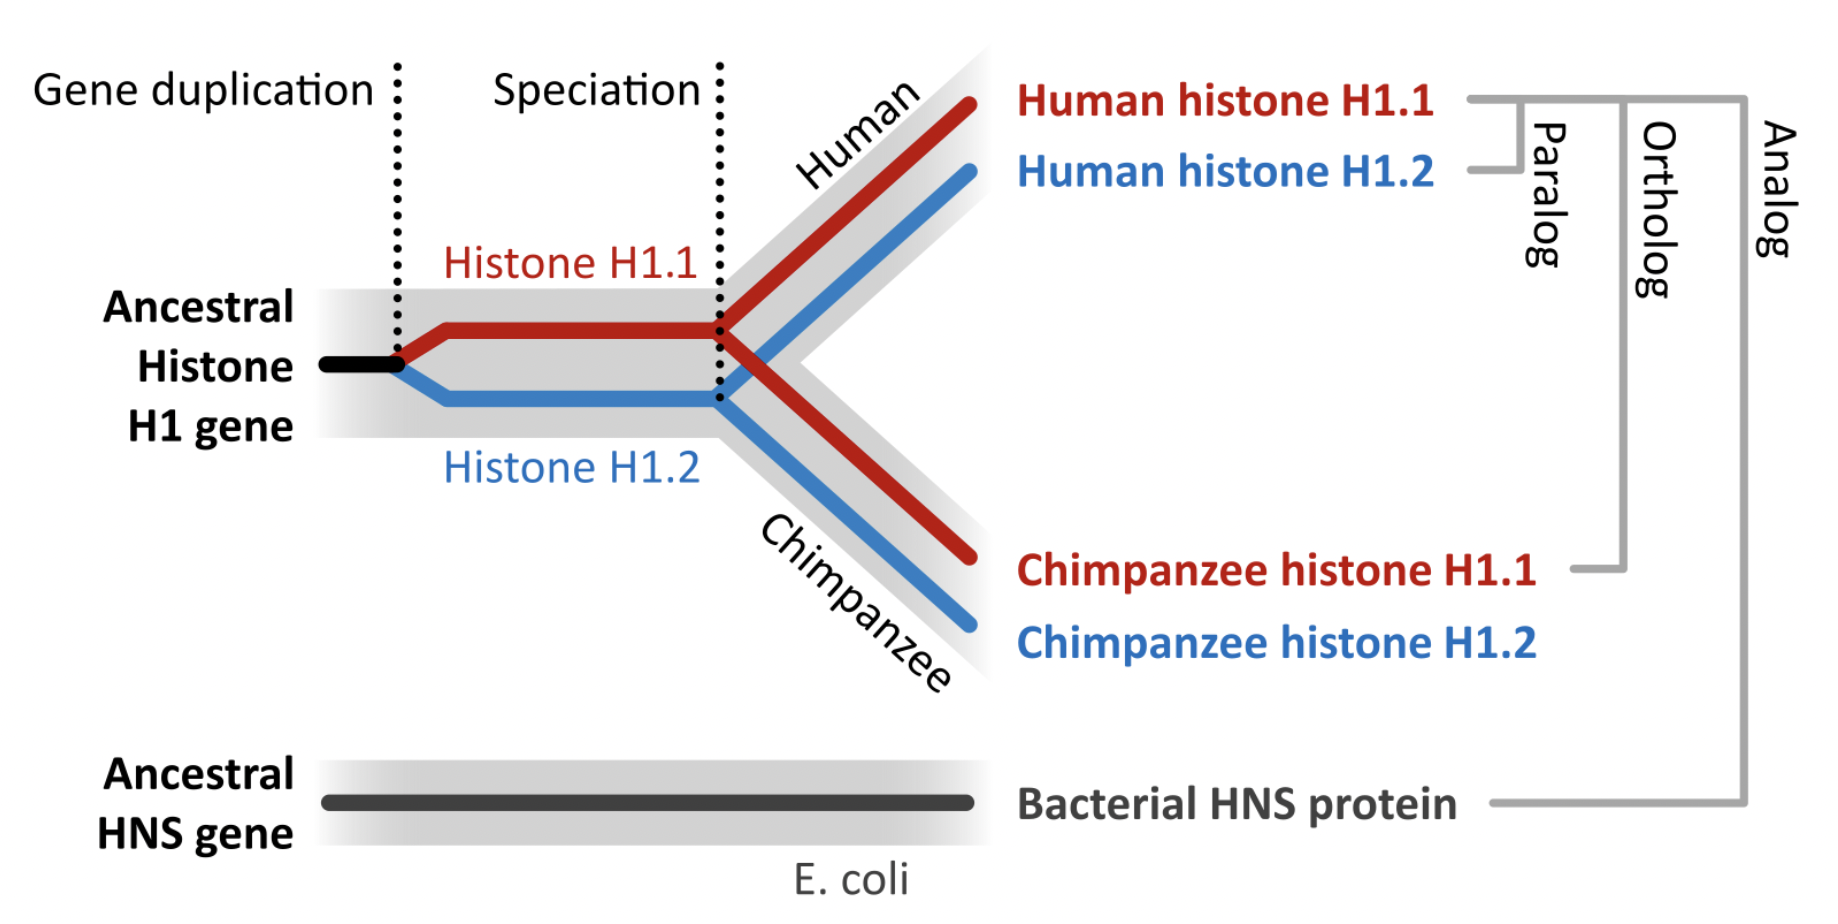 Distinción entre diferentes formas de homología entre secuencias. Un evento de duplicación de una histona en el genoma de una especie ancestral al humano y el chimpacé provoca que en la actualidad cada una de las especies también posean un par copias génicas codificantes para histonas. Desde su duplicación inicial las dos copias han evolucionado en forma diferente, y por lo tanto la histona H1.1 es diferentes de la histona H1.2. Más aún, desde el evento de especiación que llevó a que seamos una especie diferente al chimpancé cada una de las histonas ha continuado evolucionando, y por lo tanto ya no serán idénticas las histonas H1.1 de estas especies, y tampoco las copias codificantes para histona H1.2. Se denomina ortólogos a los genes que se relacionan entre sí por un evento de especiación, mientras que se define parálogos a los que se relacionan a través de un evento de duplicación ancestral. Figura de Wikipedia, autor: Thomas Shafee, (CC BY 4.0).